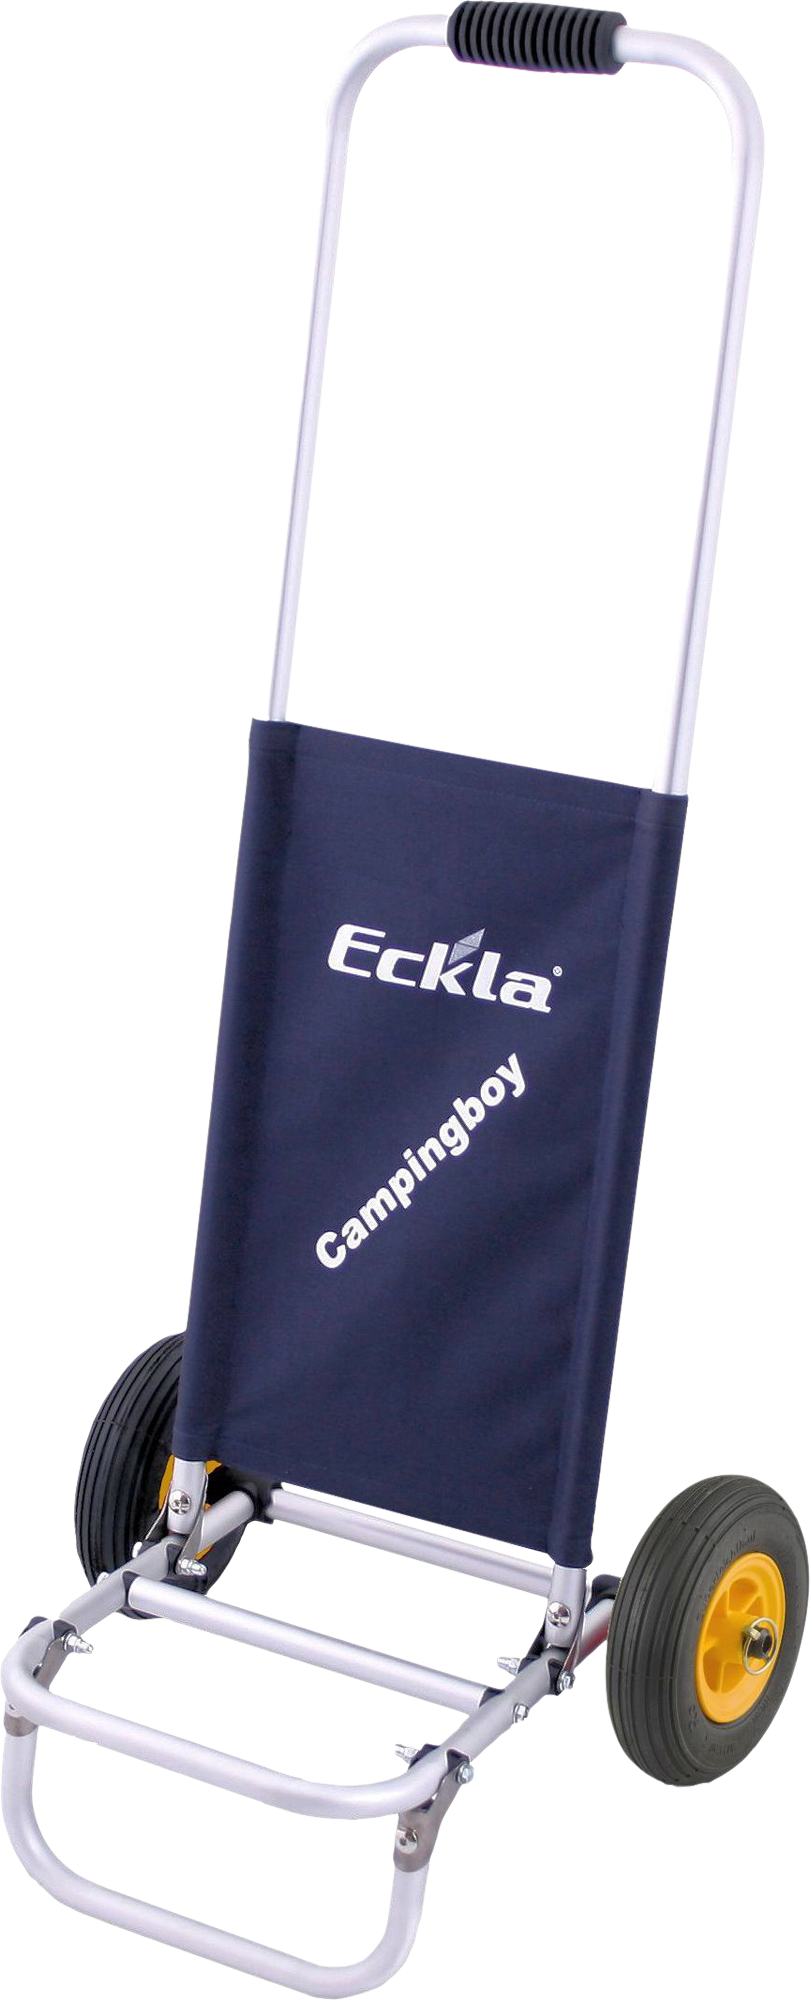 ECKLA - Campingboy  200 mm Luftrad